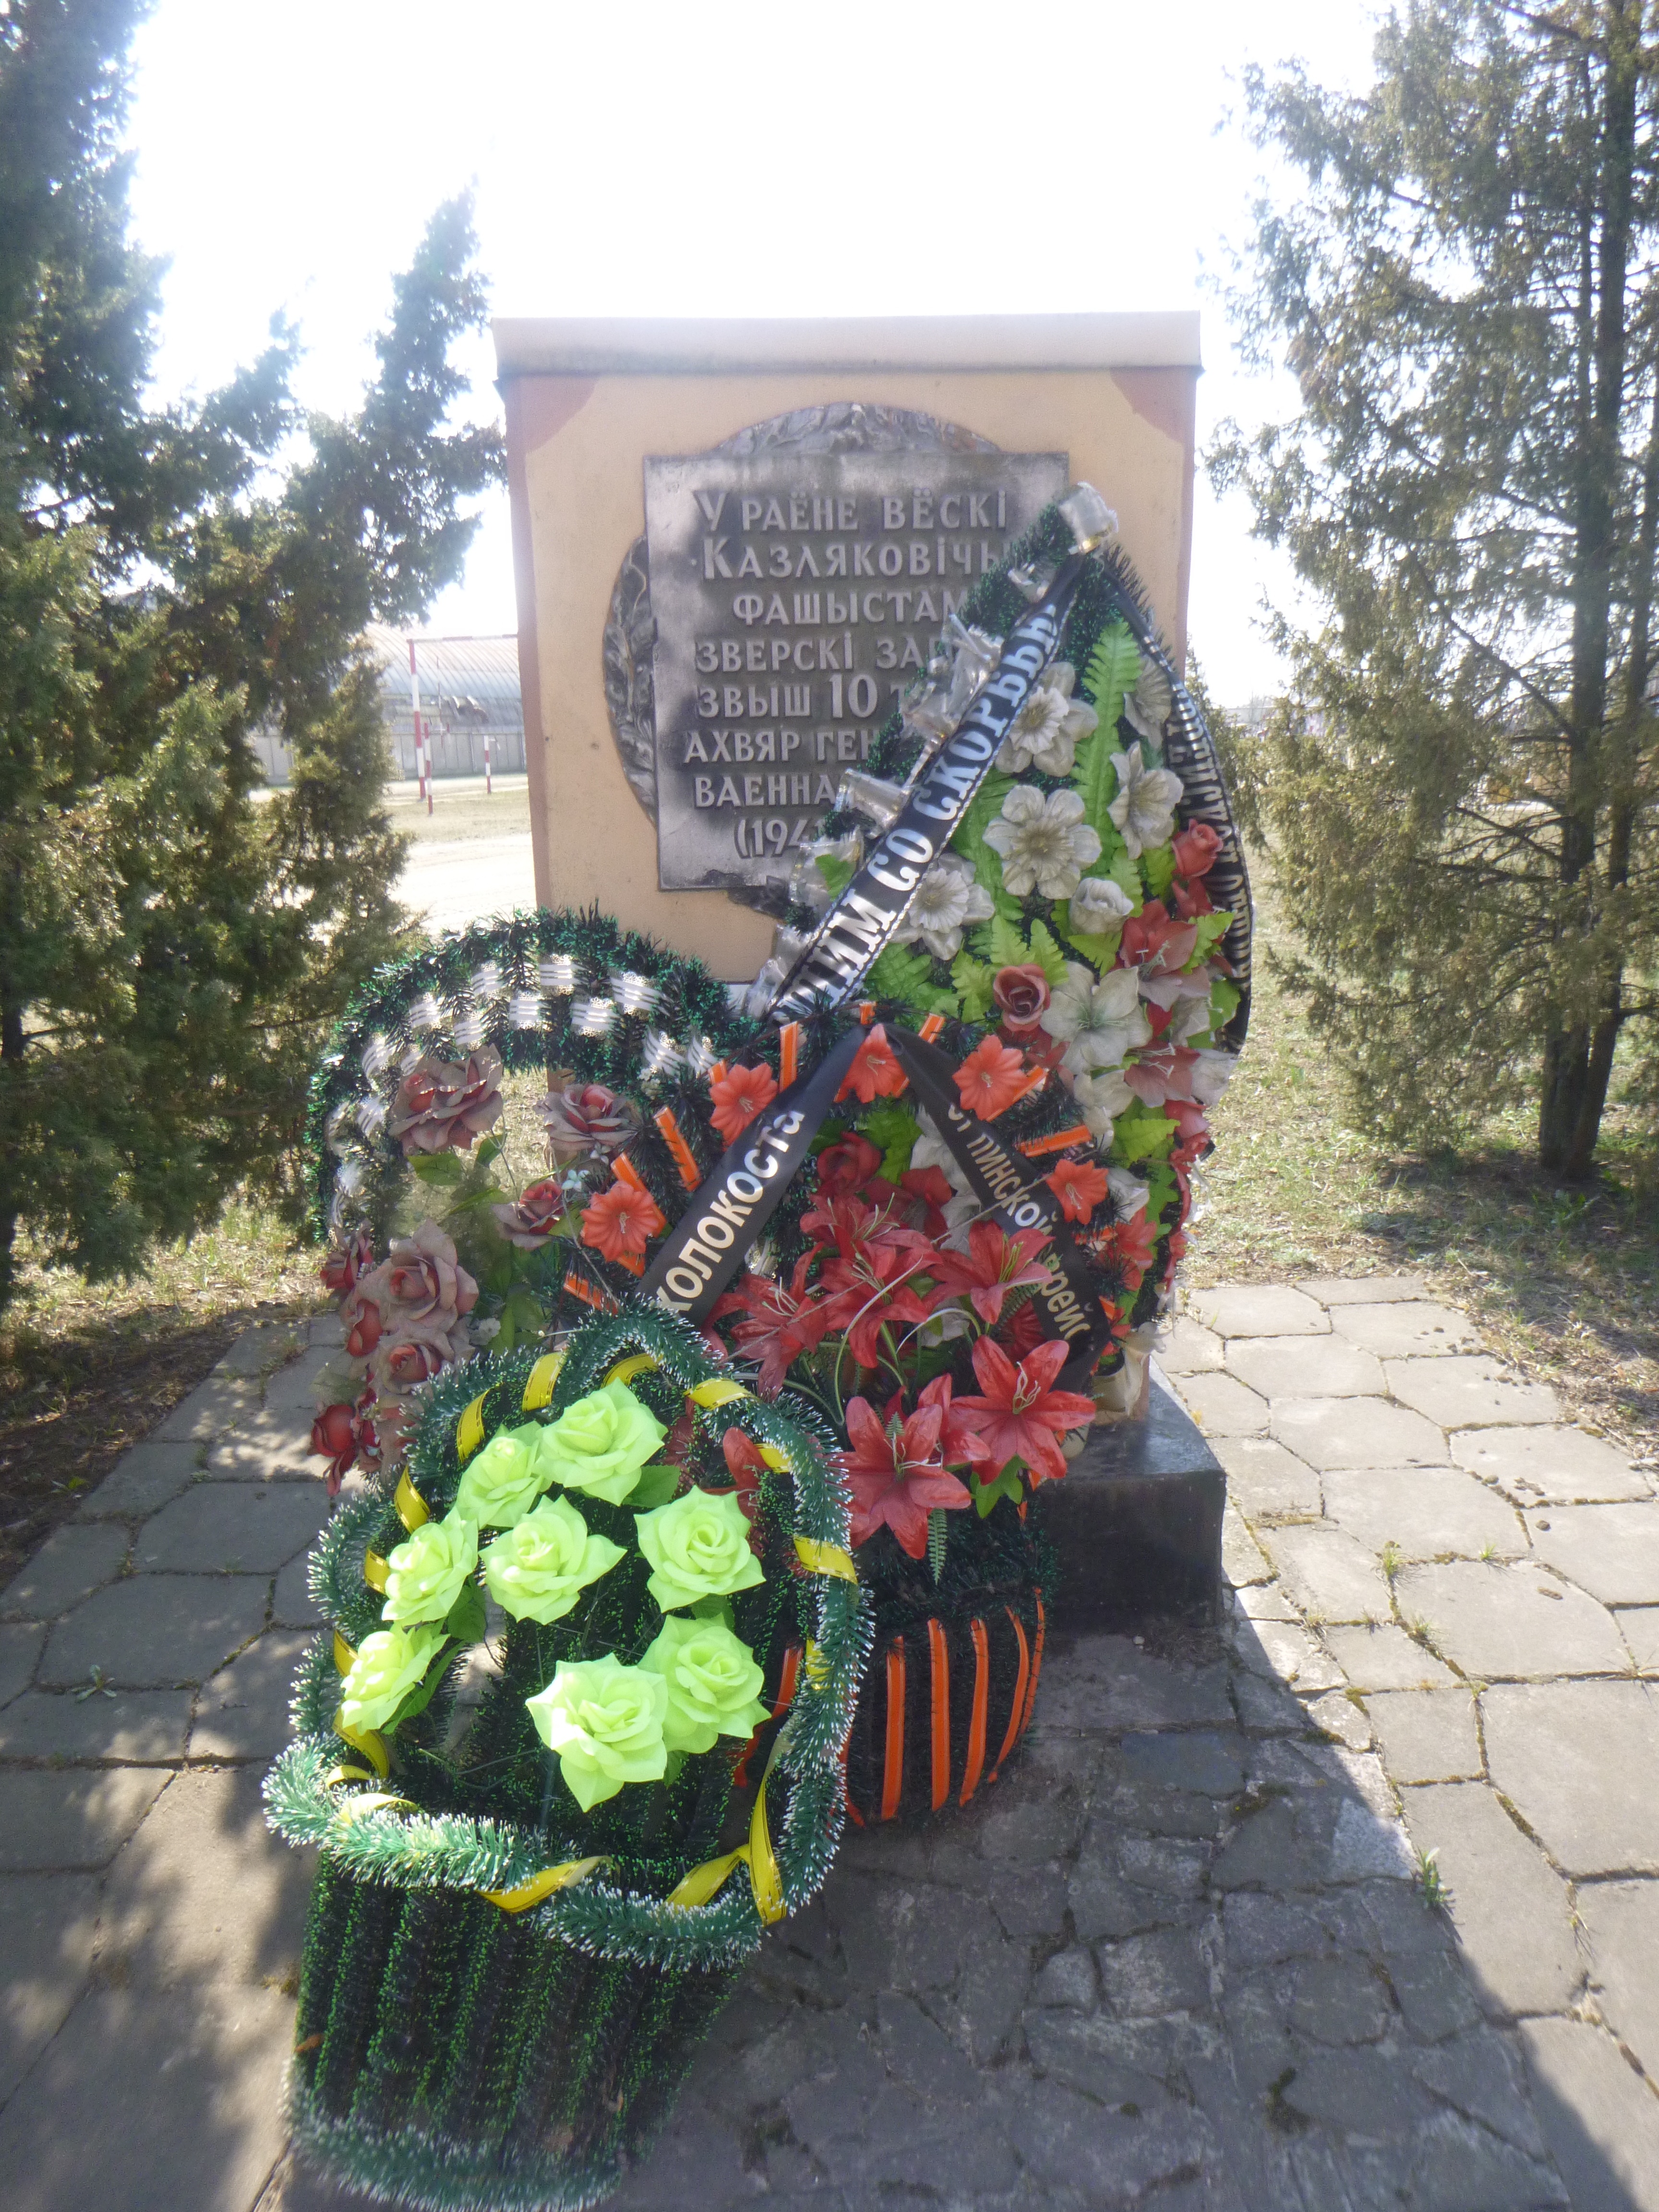 Мемориальный знак На месте расстрела жертв фашизма, расположенная в г. Пинск,  район, Брестская область